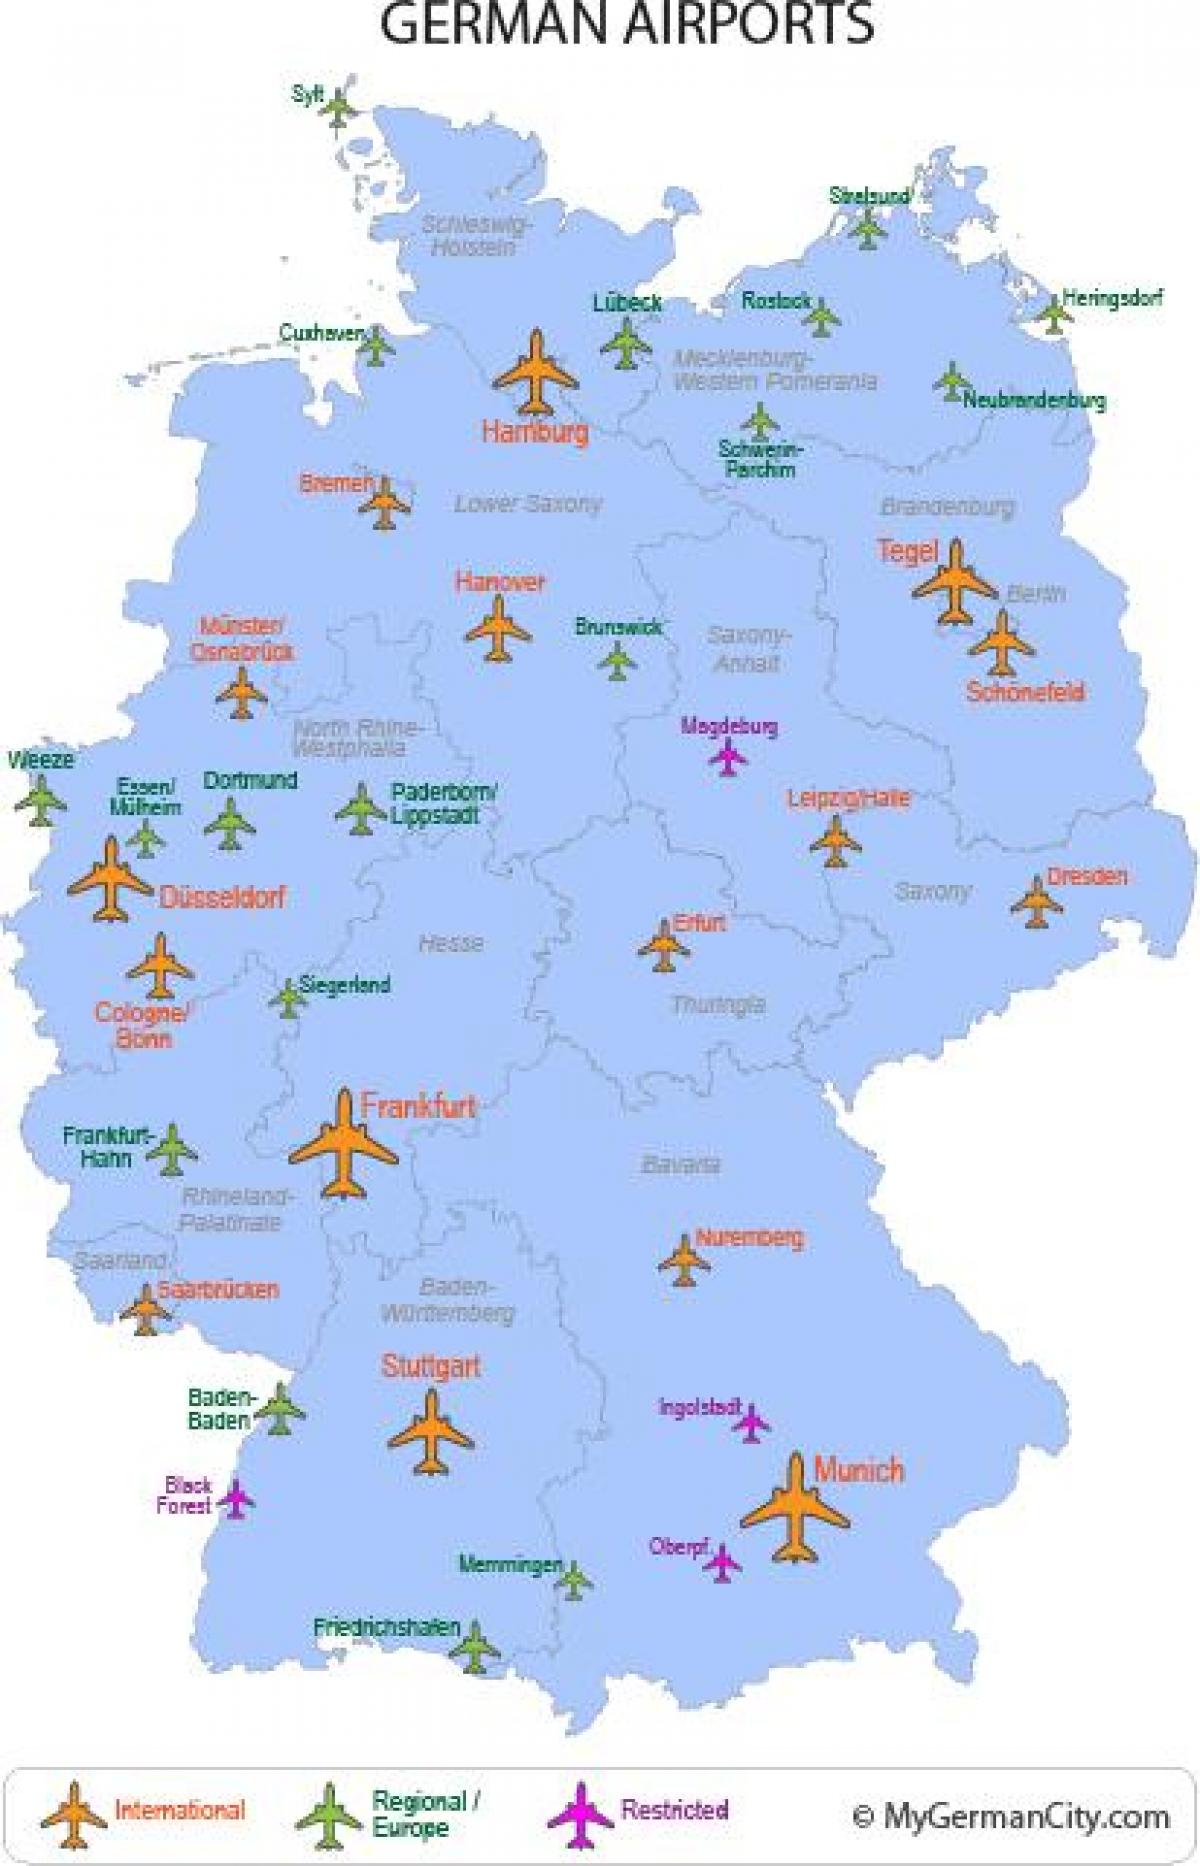 großen Flughäfen in Deutschland anzeigen